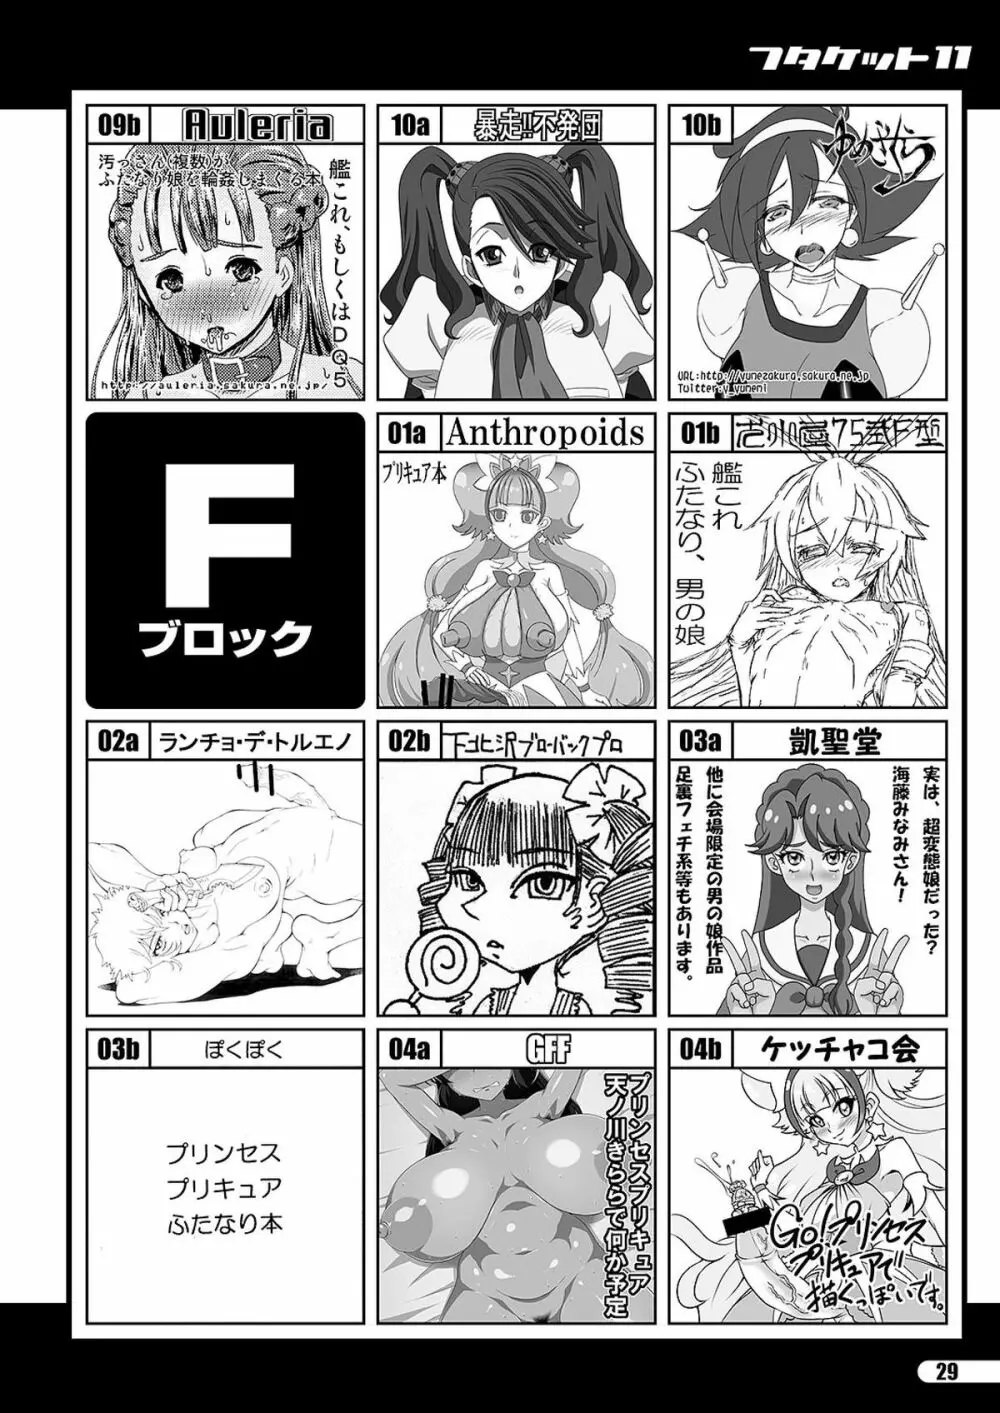 「ふたけっと11」PDF版カタログ 29ページ